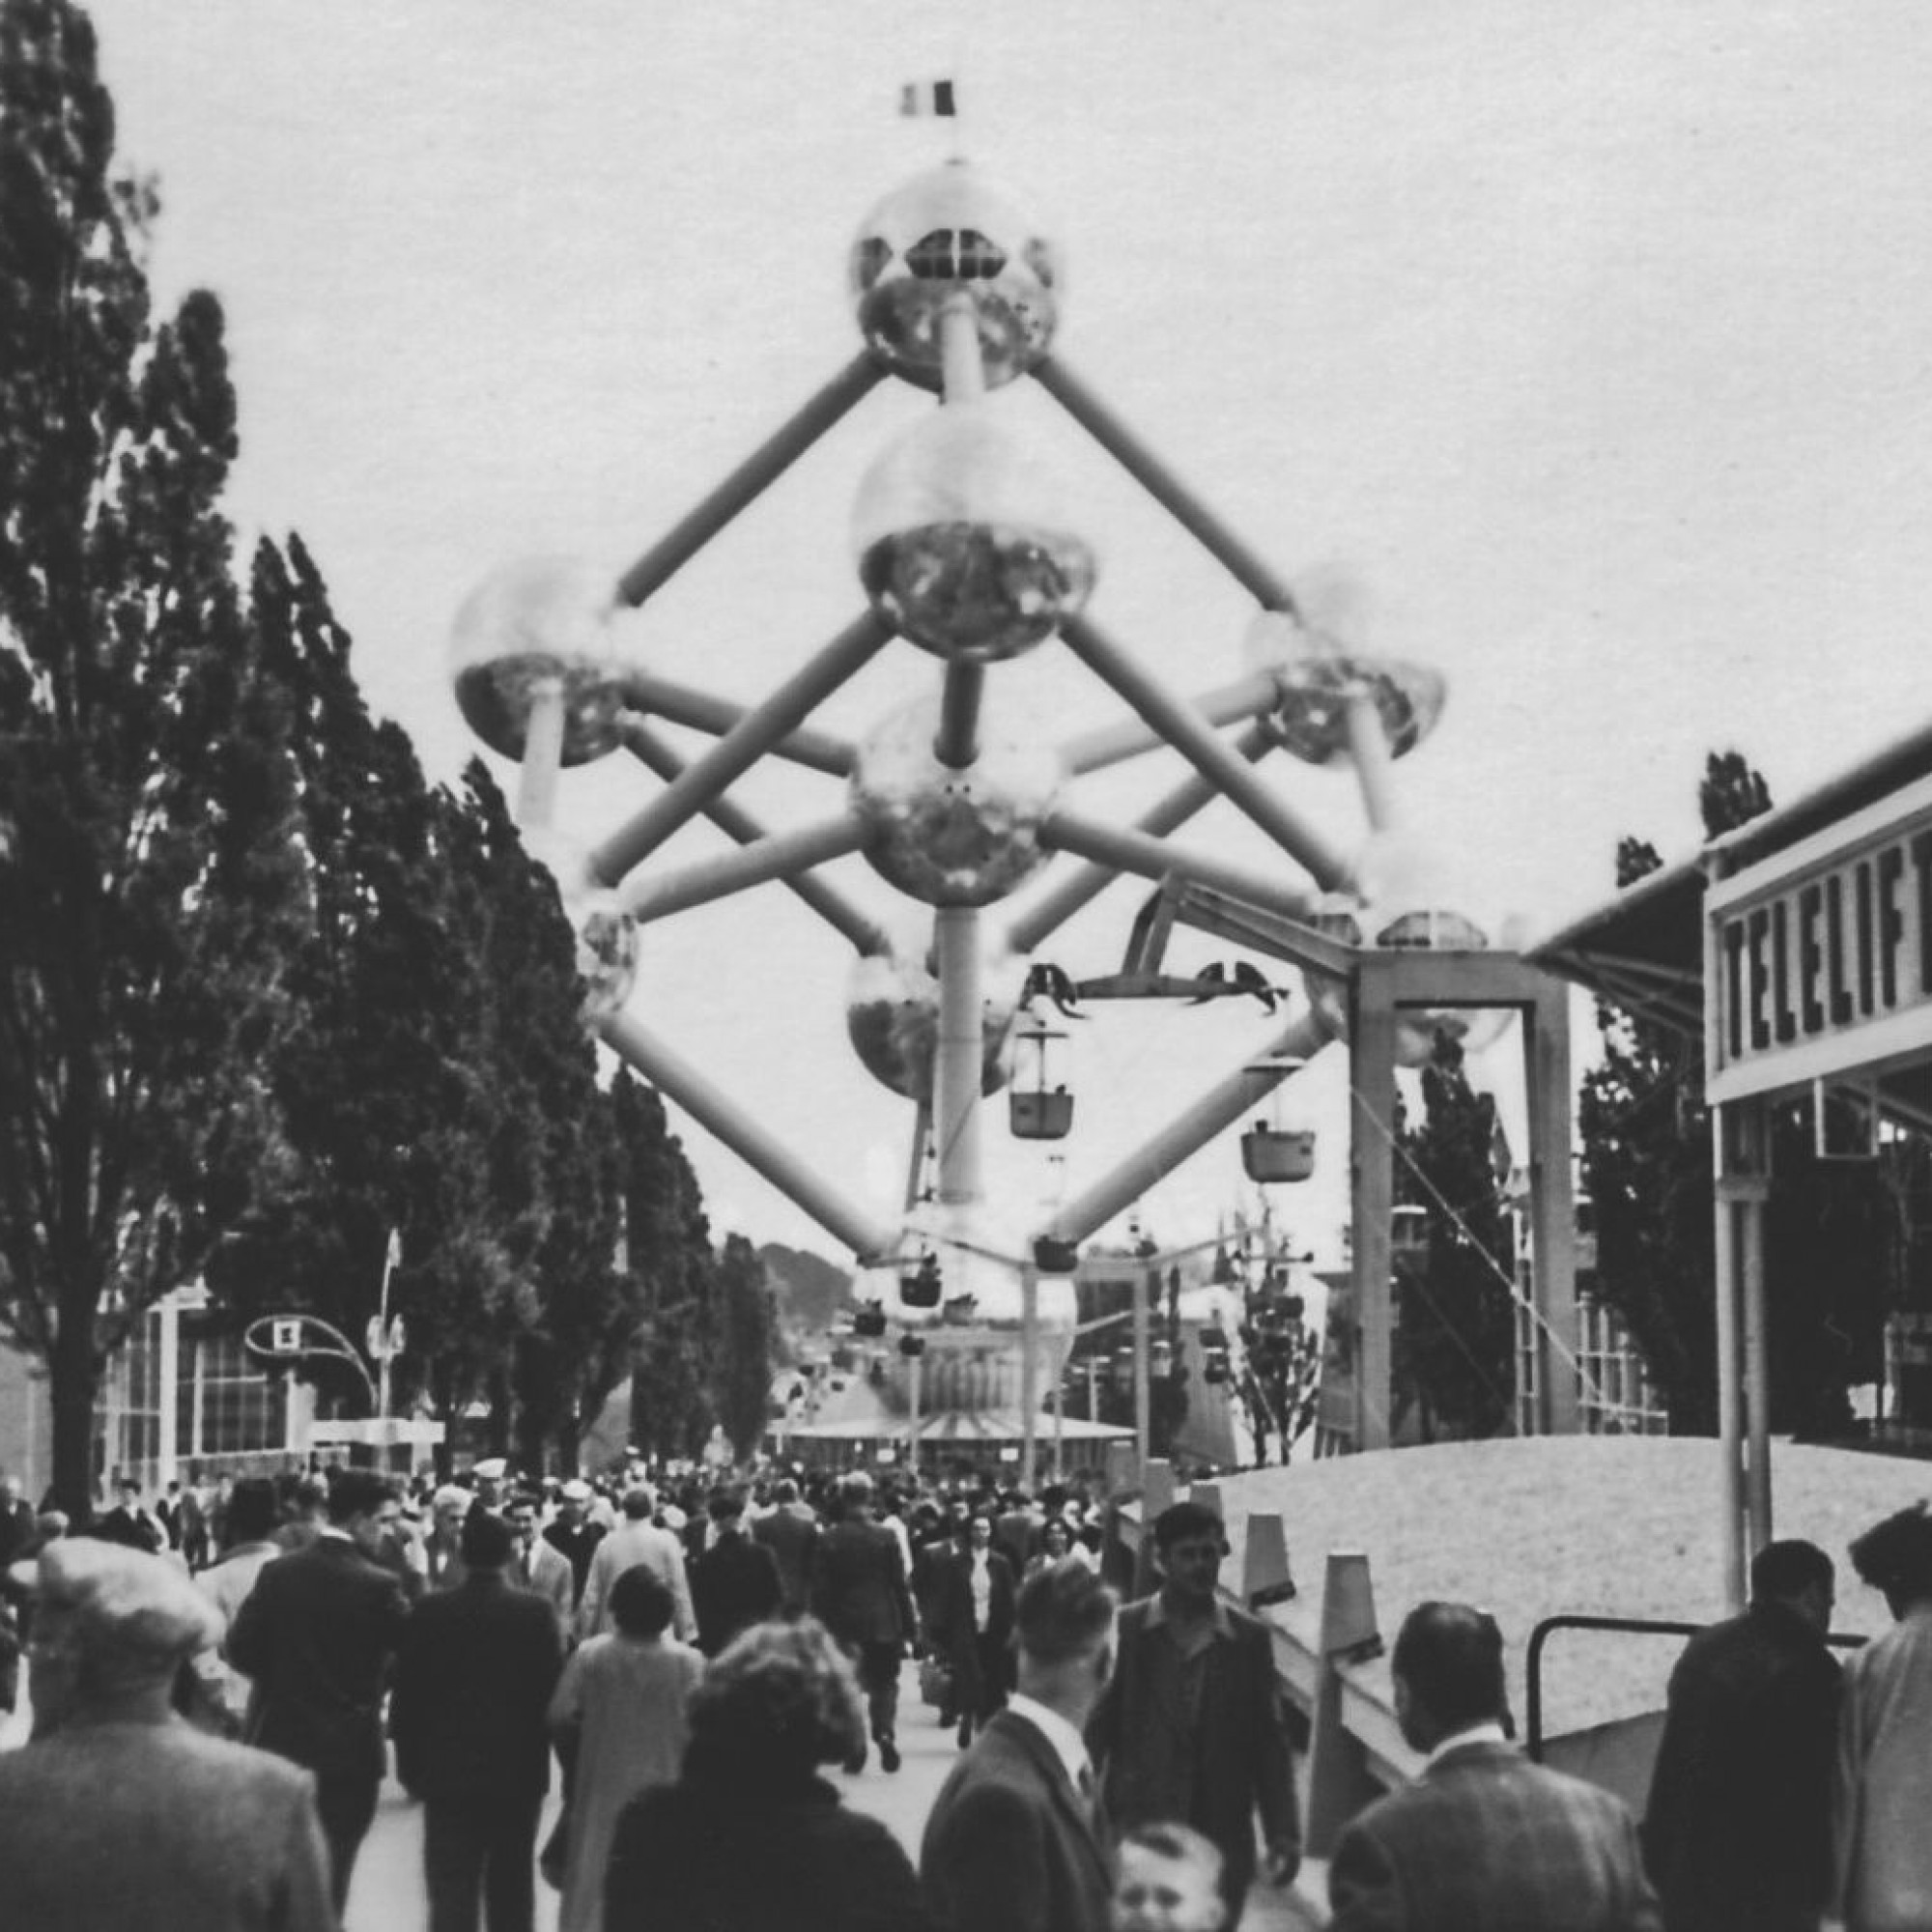 Der Forschungsreaktor befand sich an der Weltausstellung in Brüssel 1958 unter dem Atomium.